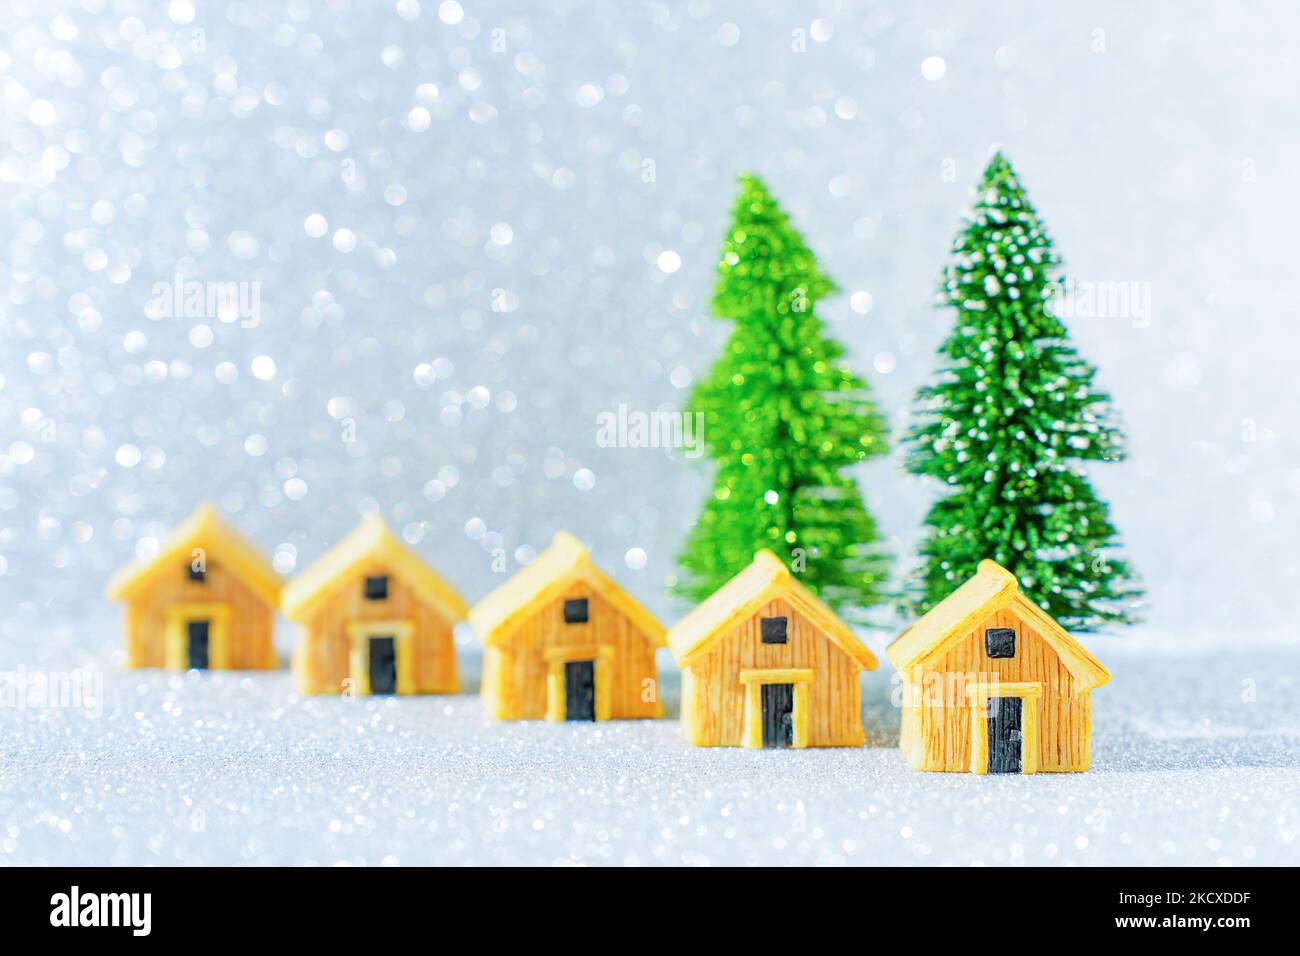 Ensemble de chalets en bois similaires placés par deux arbres de Noël en peluche sur fond étincelant. Concept de circuit des vacances d'hiver. Banque D'Images